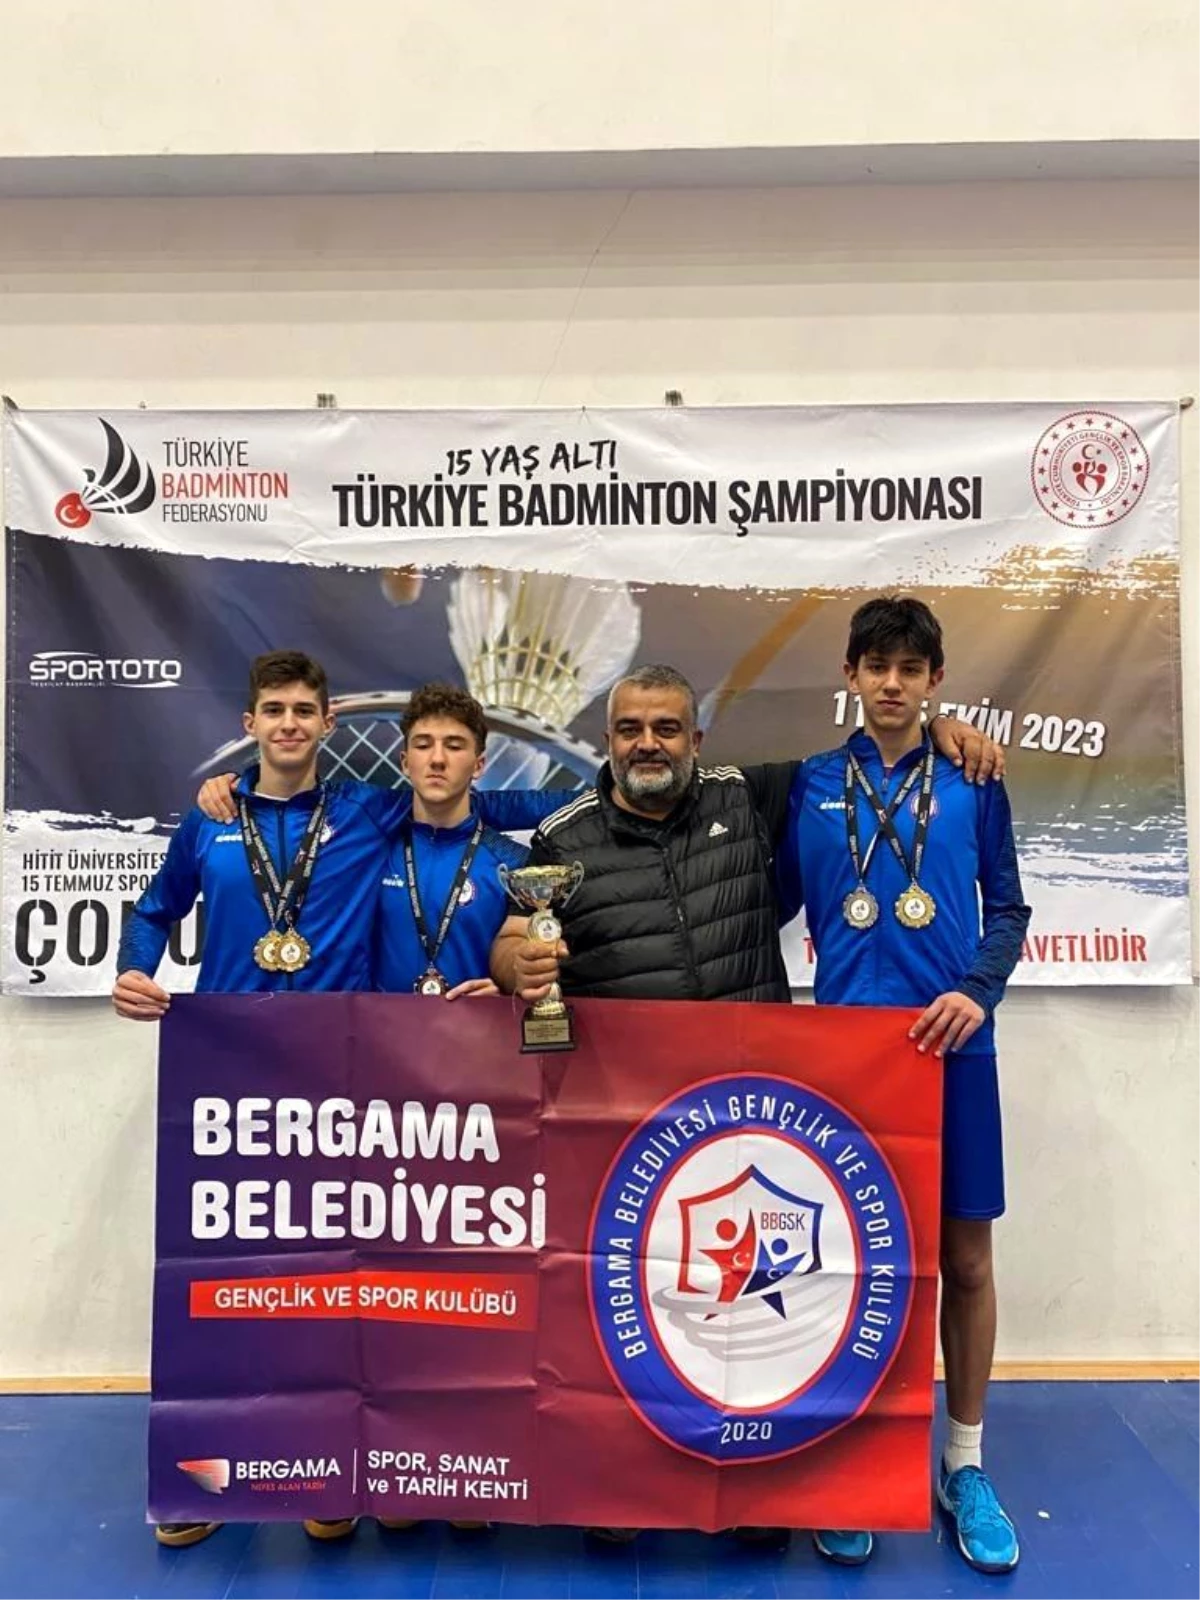 Bergama Belediyesi Sporcuları Türkiye Badminton Şampiyonasında Başarılı Oldu